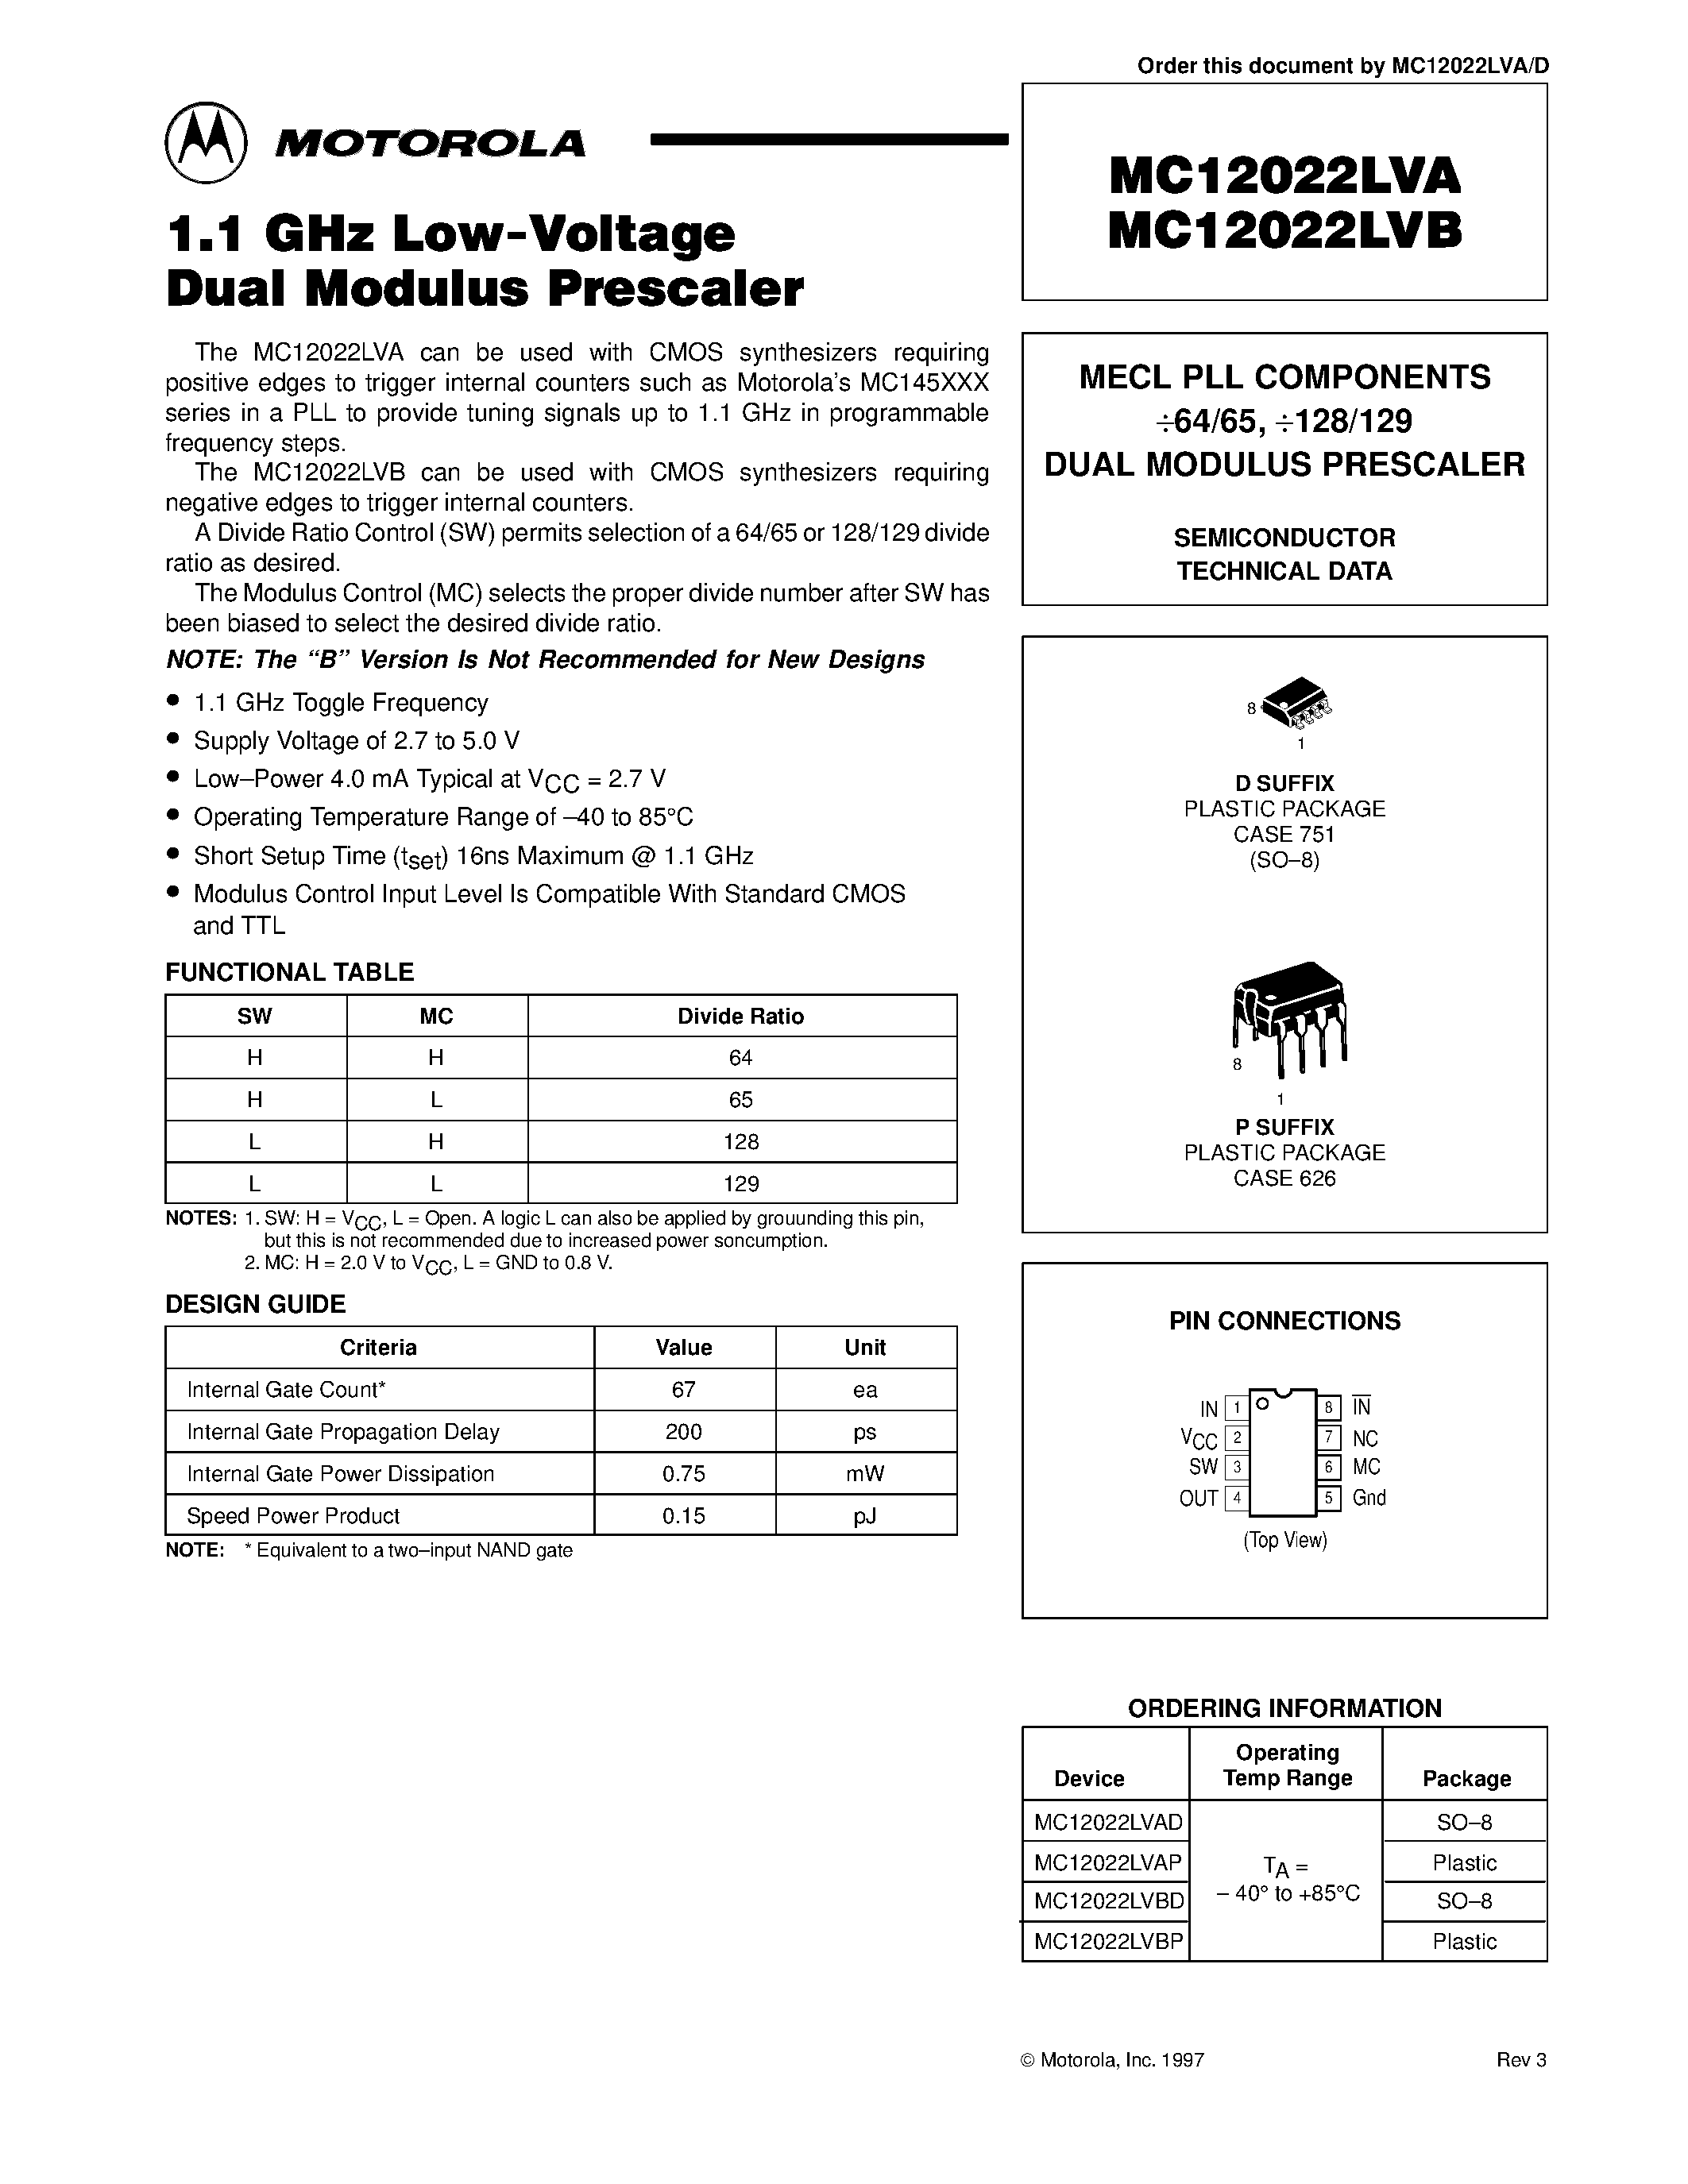 Datasheet MC12022LVAP - MECL PLL COMPONENTS 64/65 / 128/129 DUAL MODULUS PRESCALER page 1